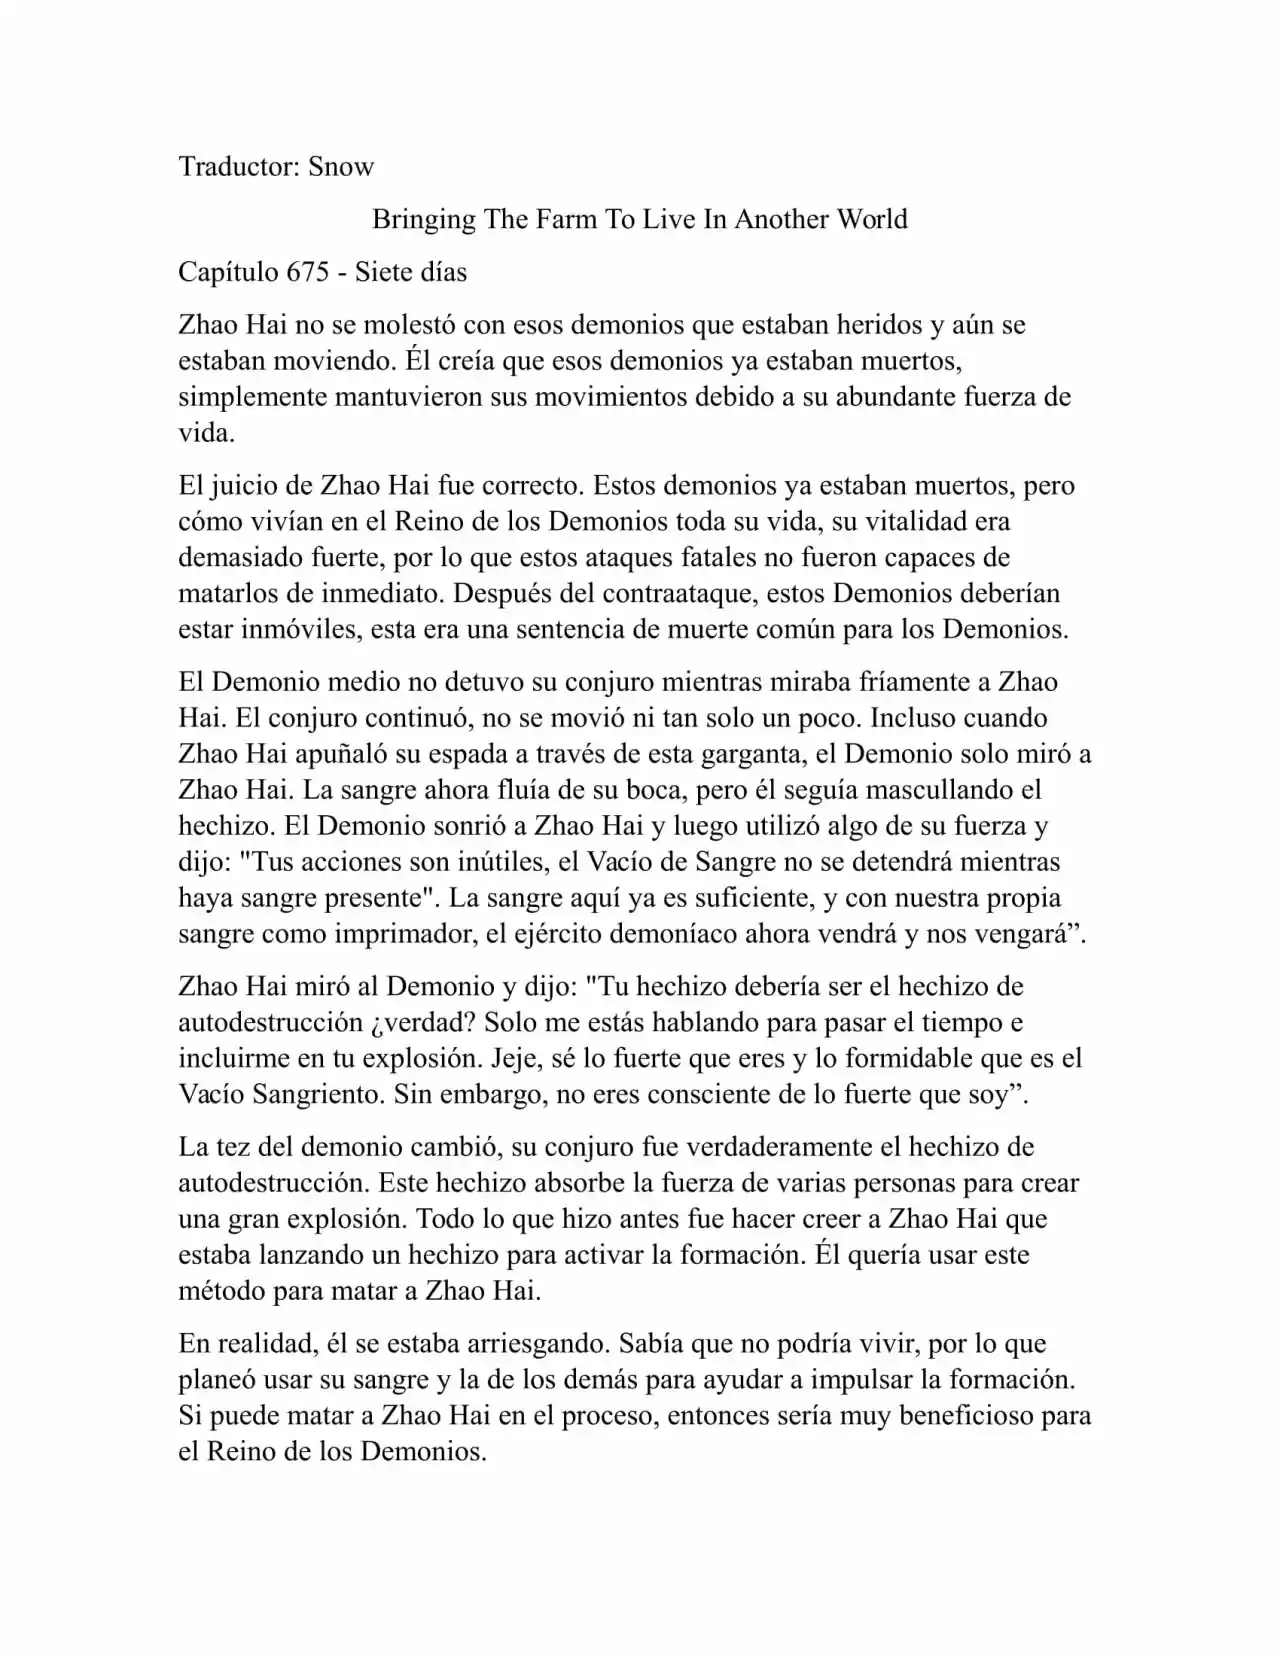 Llevando La Granja Para Vivir En Otro Mundo (Novela: Chapter 675 - Page 1